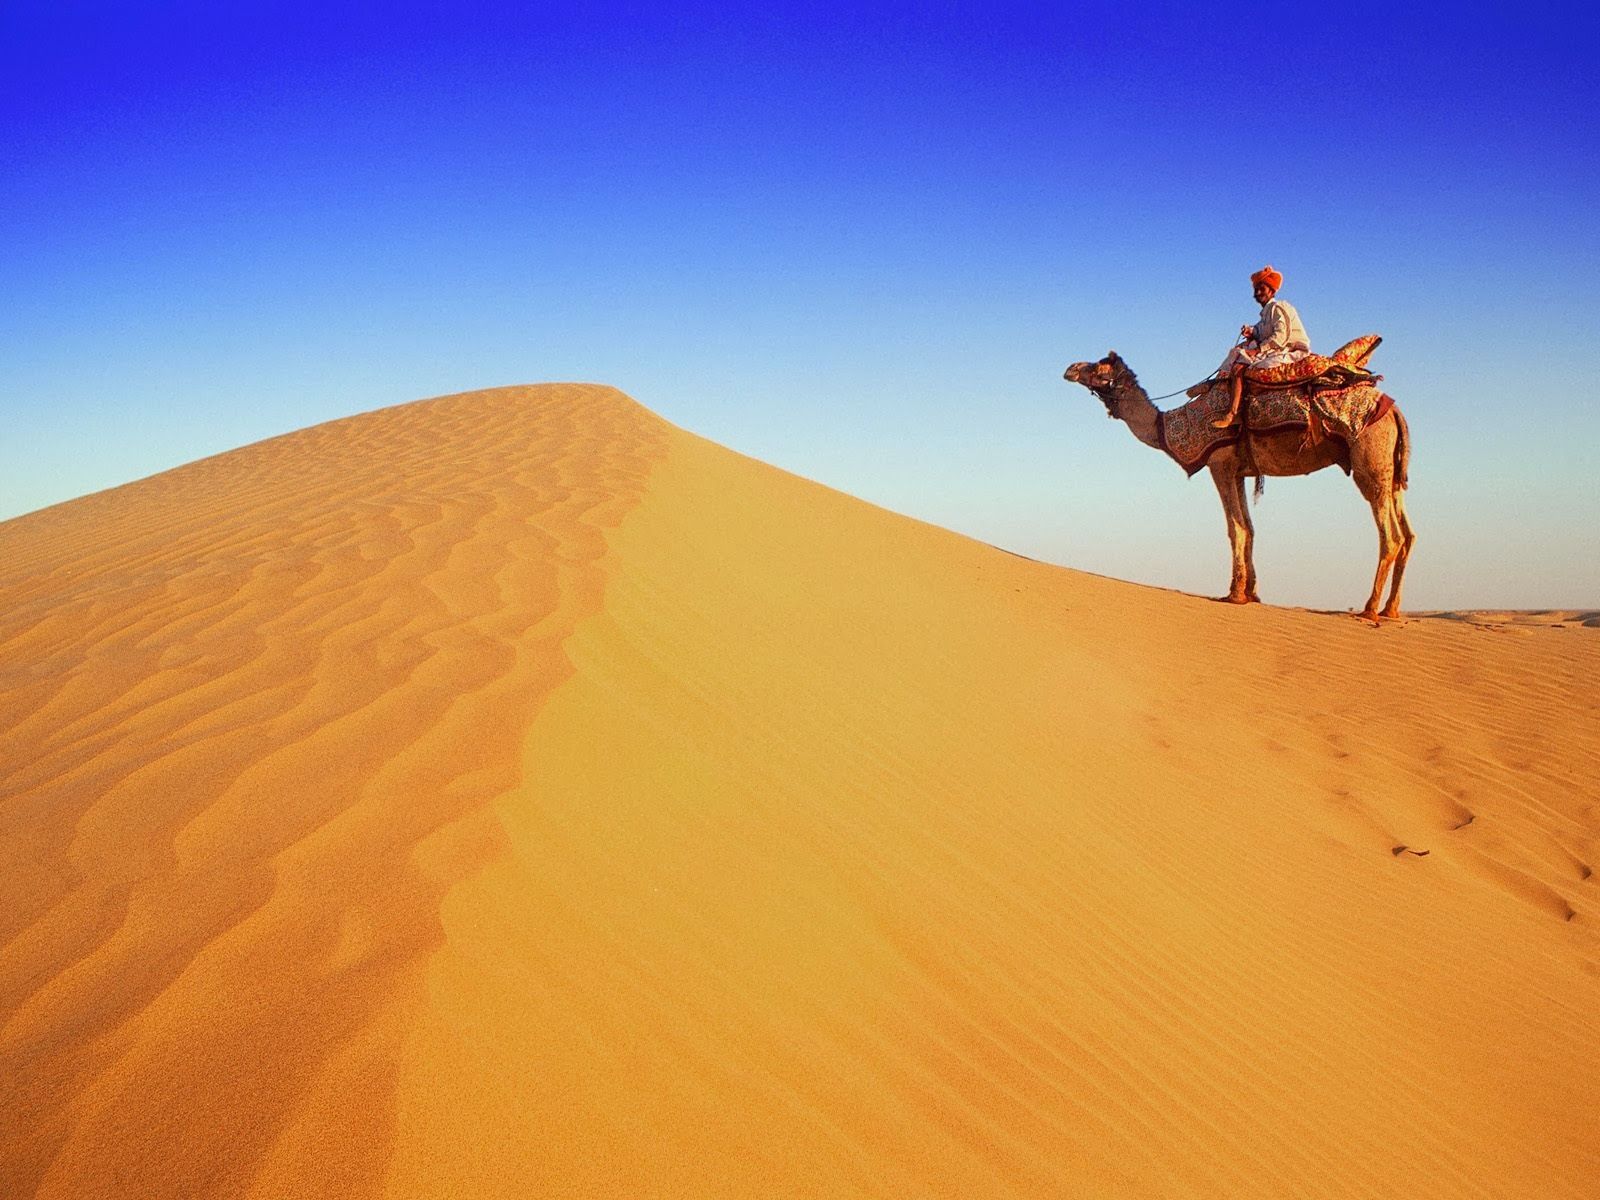 beauty walpaper: Desert and Camel Wallpaper